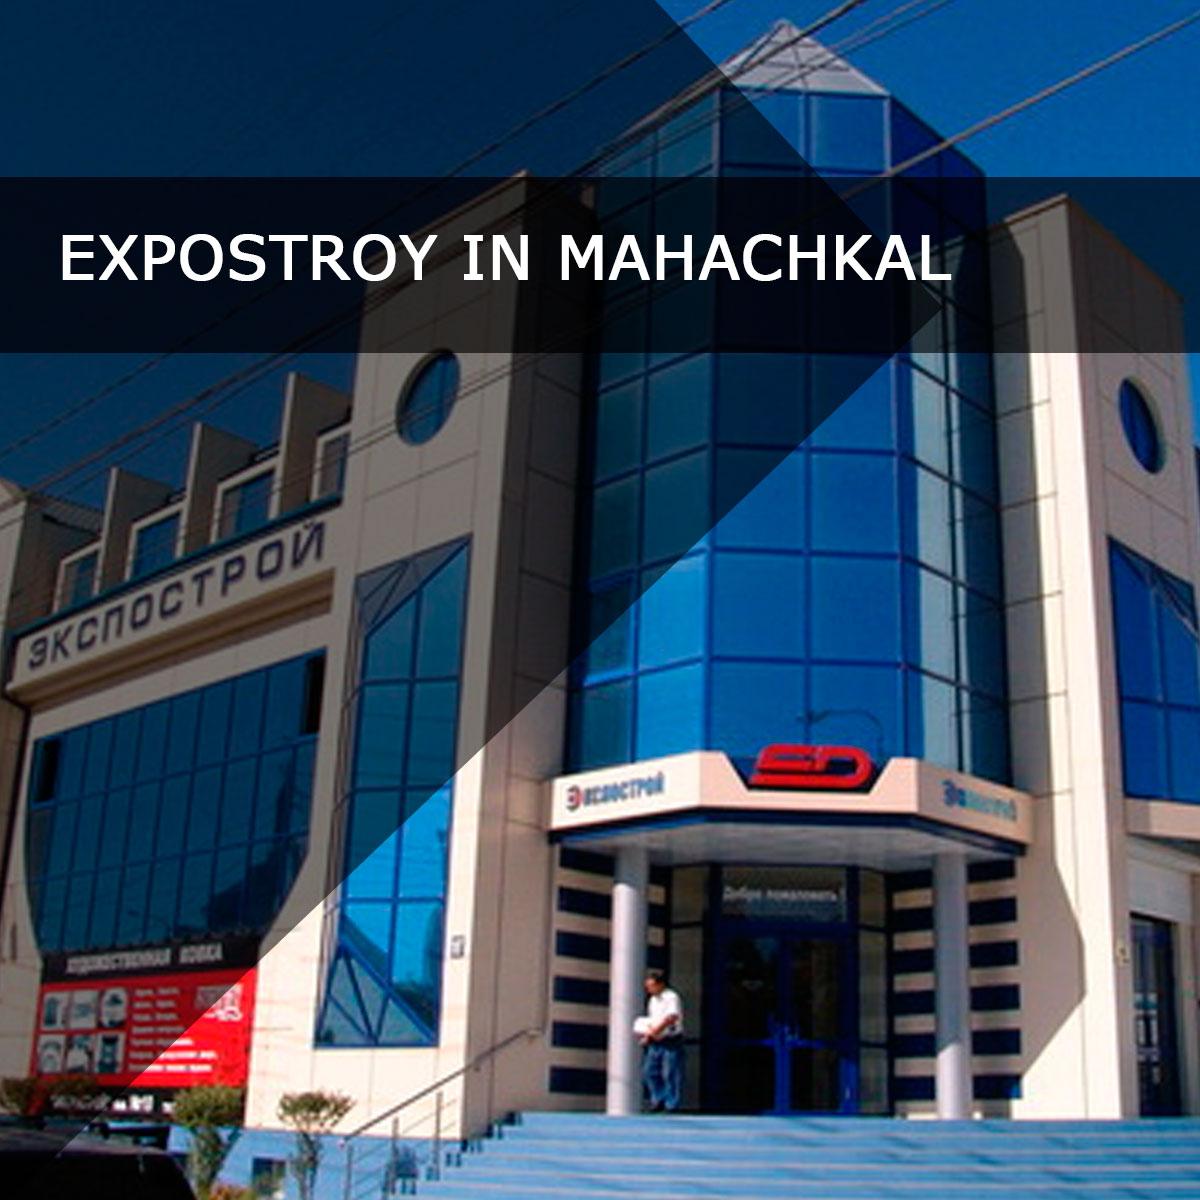 Ekspostroj complex in Makhachkala